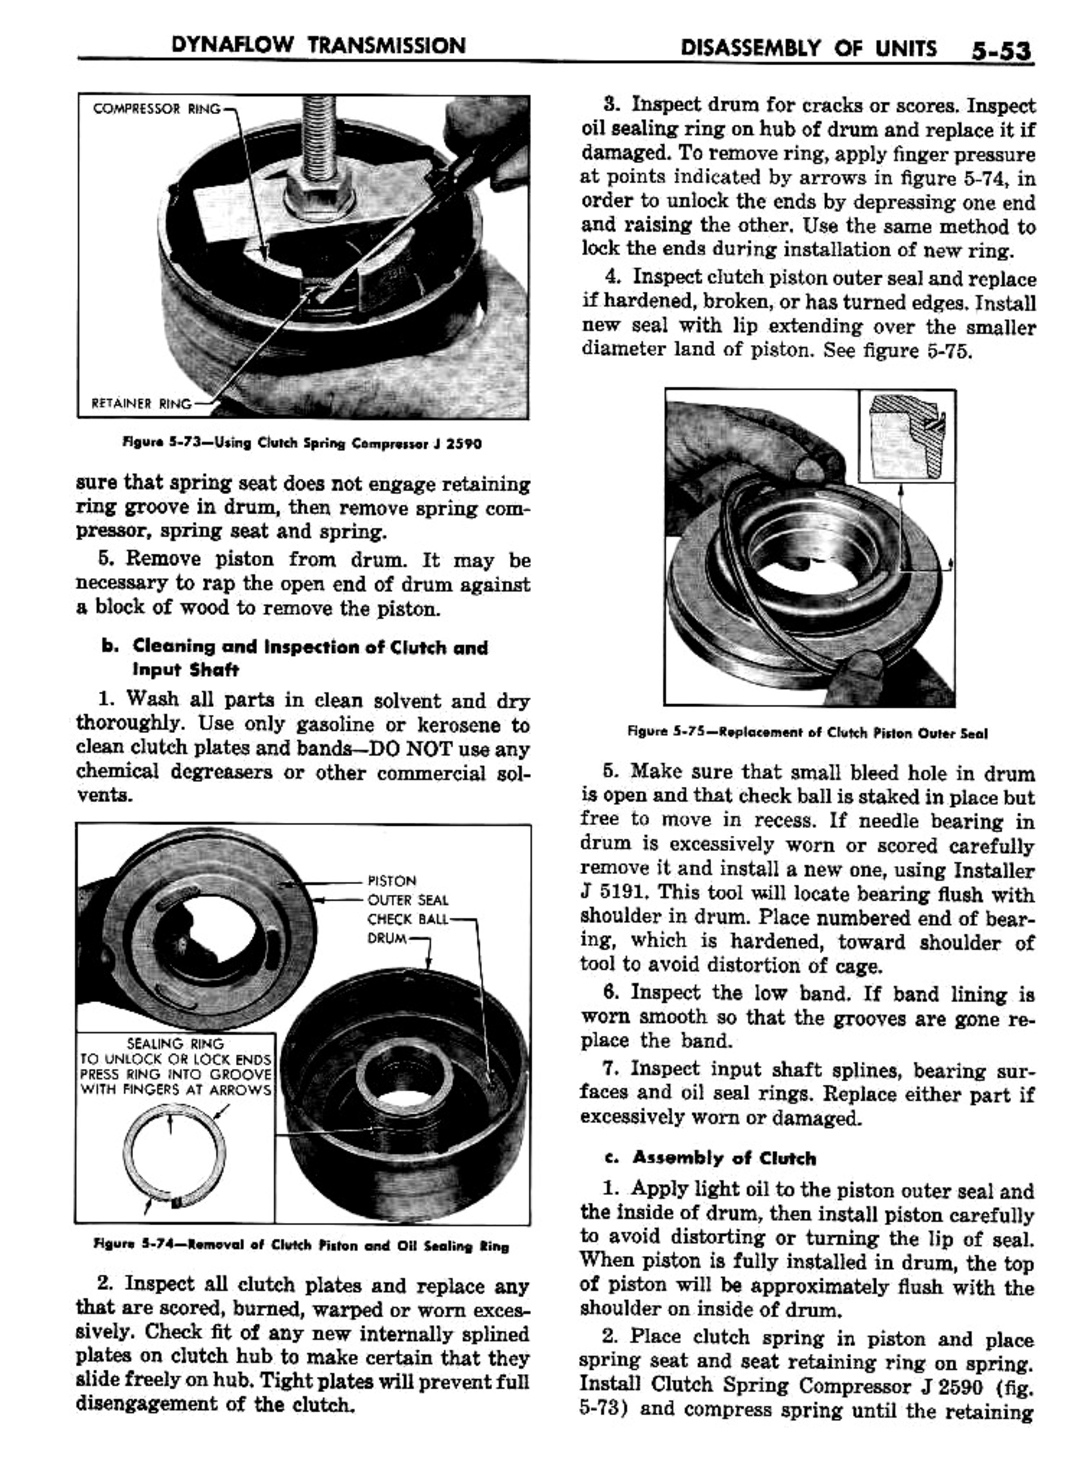 n_06 1957 Buick Shop Manual - Dynaflow-053-053.jpg